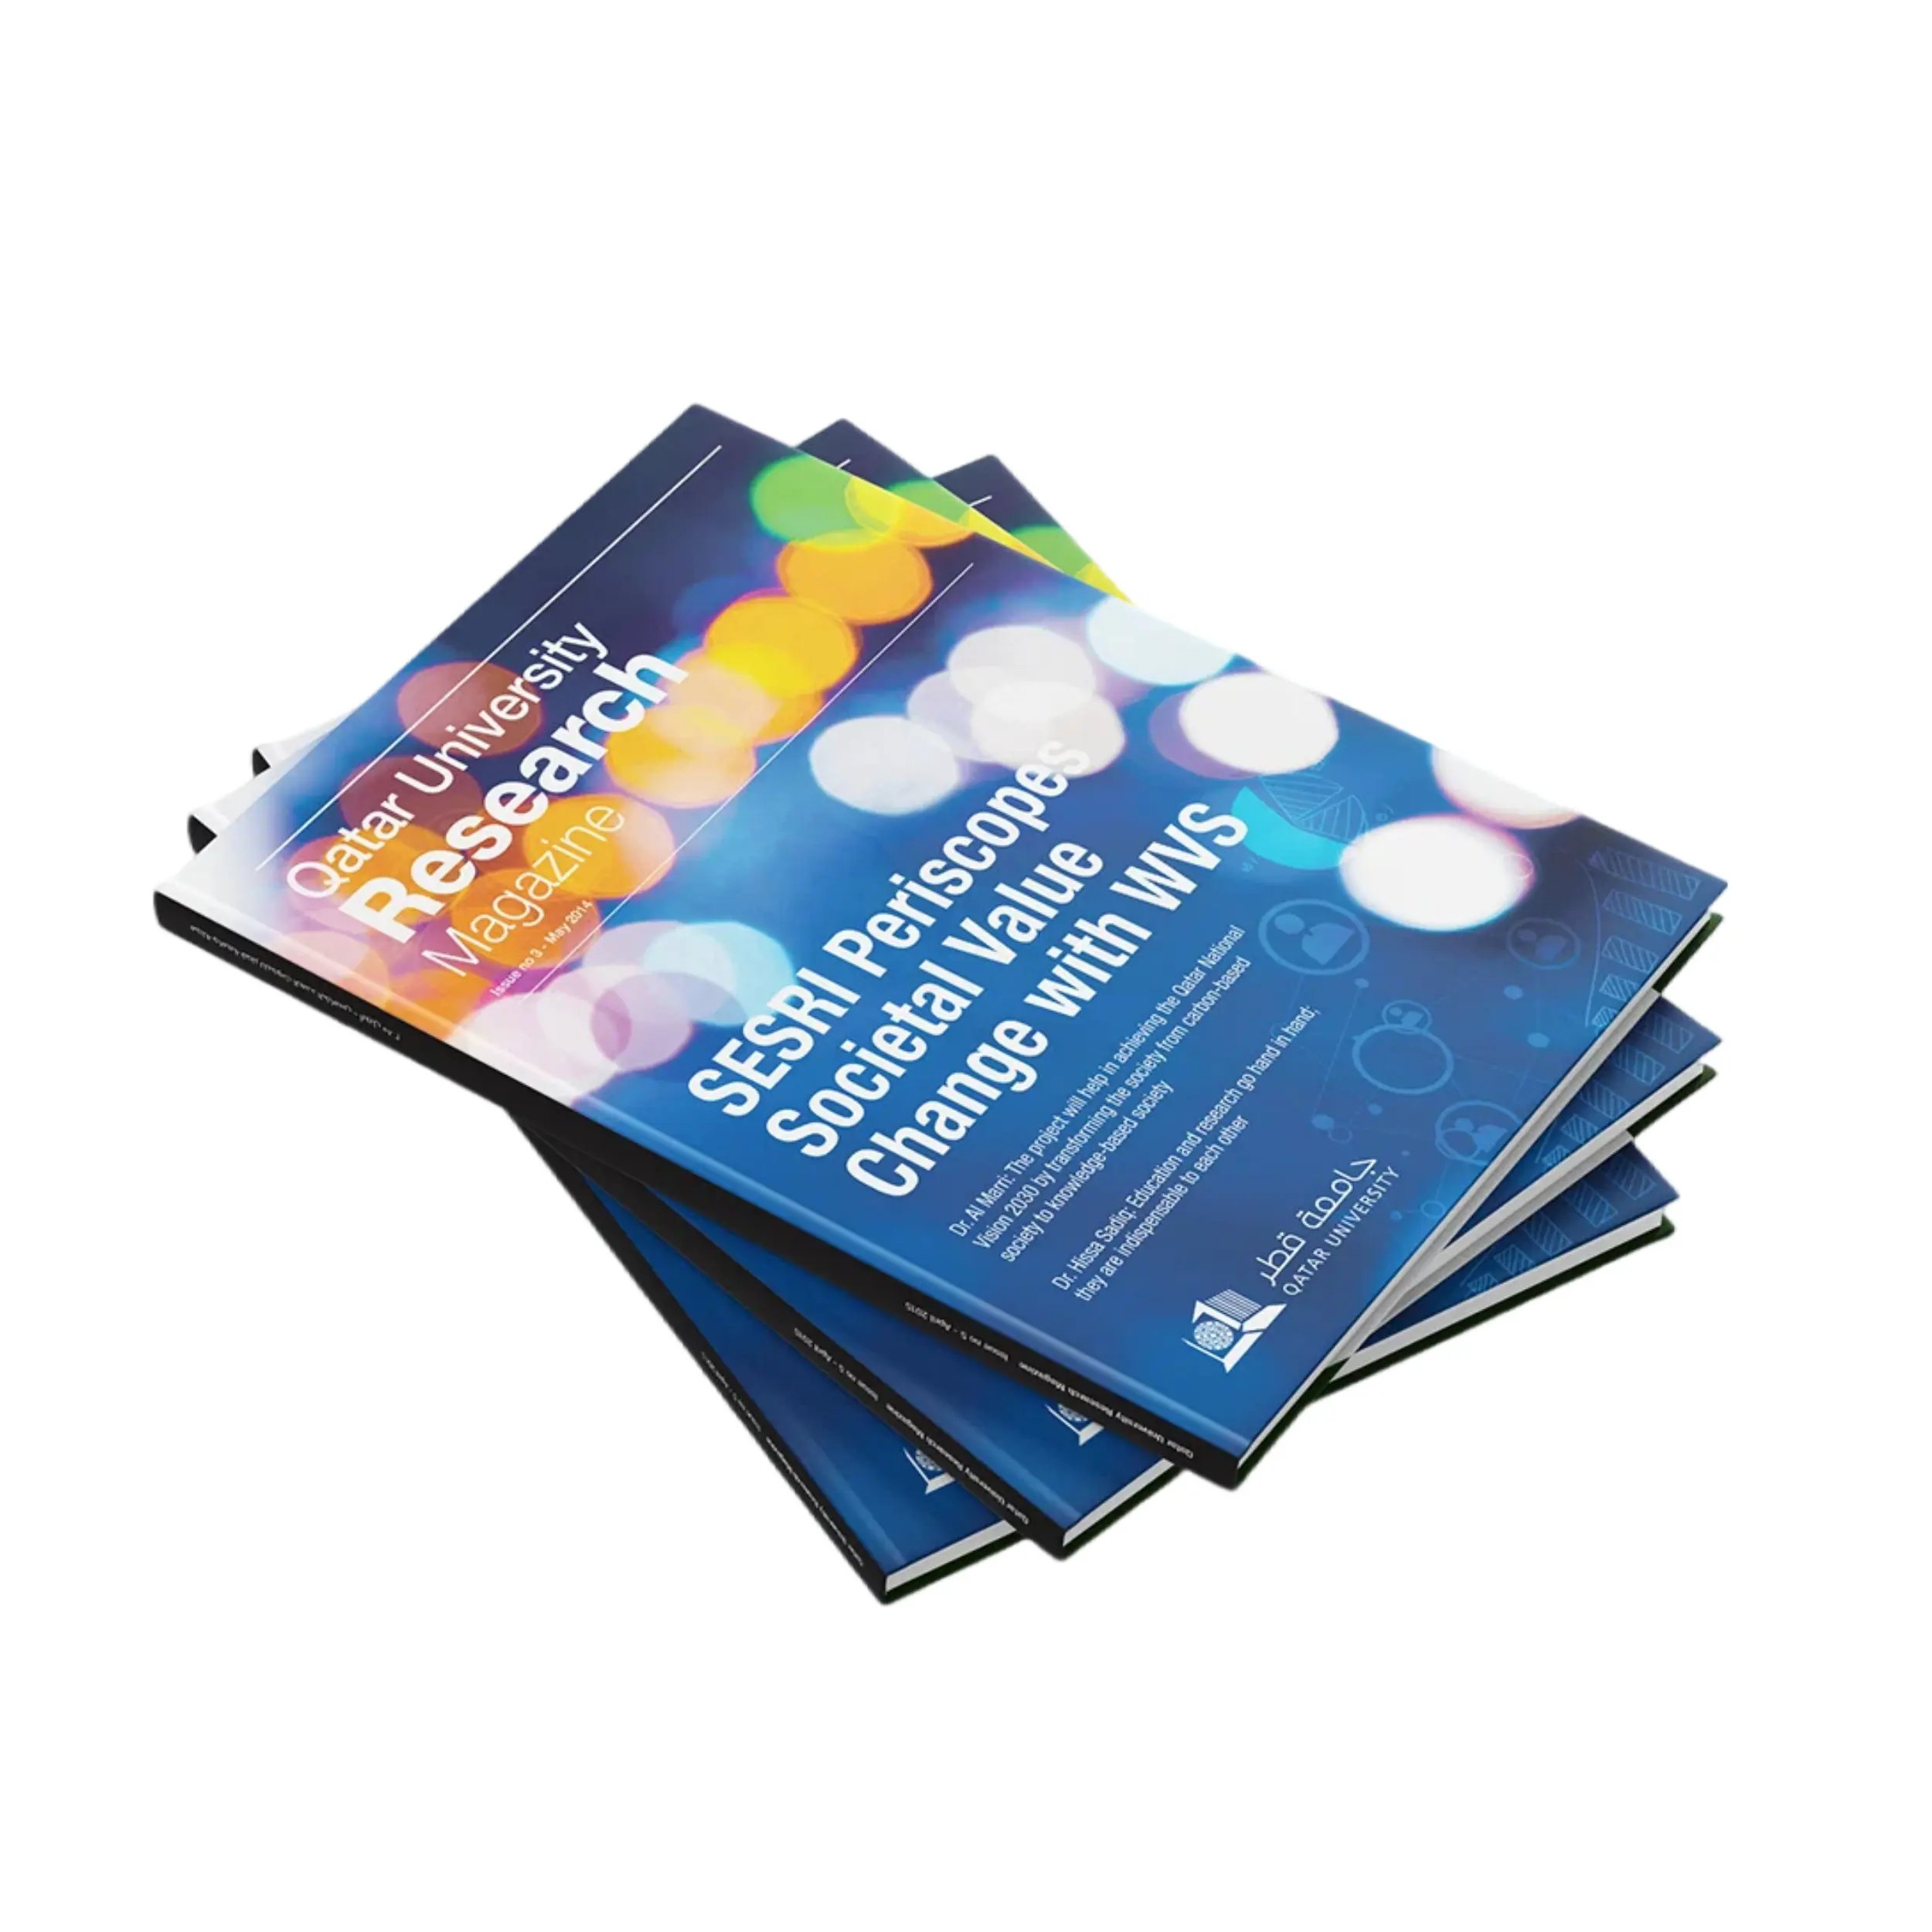 Özel dergi baskısı yüksek kaliteli profesyonel ve bağlama hizmetleri üretim özelleştirilebilir parlak mat kaplama dergileri